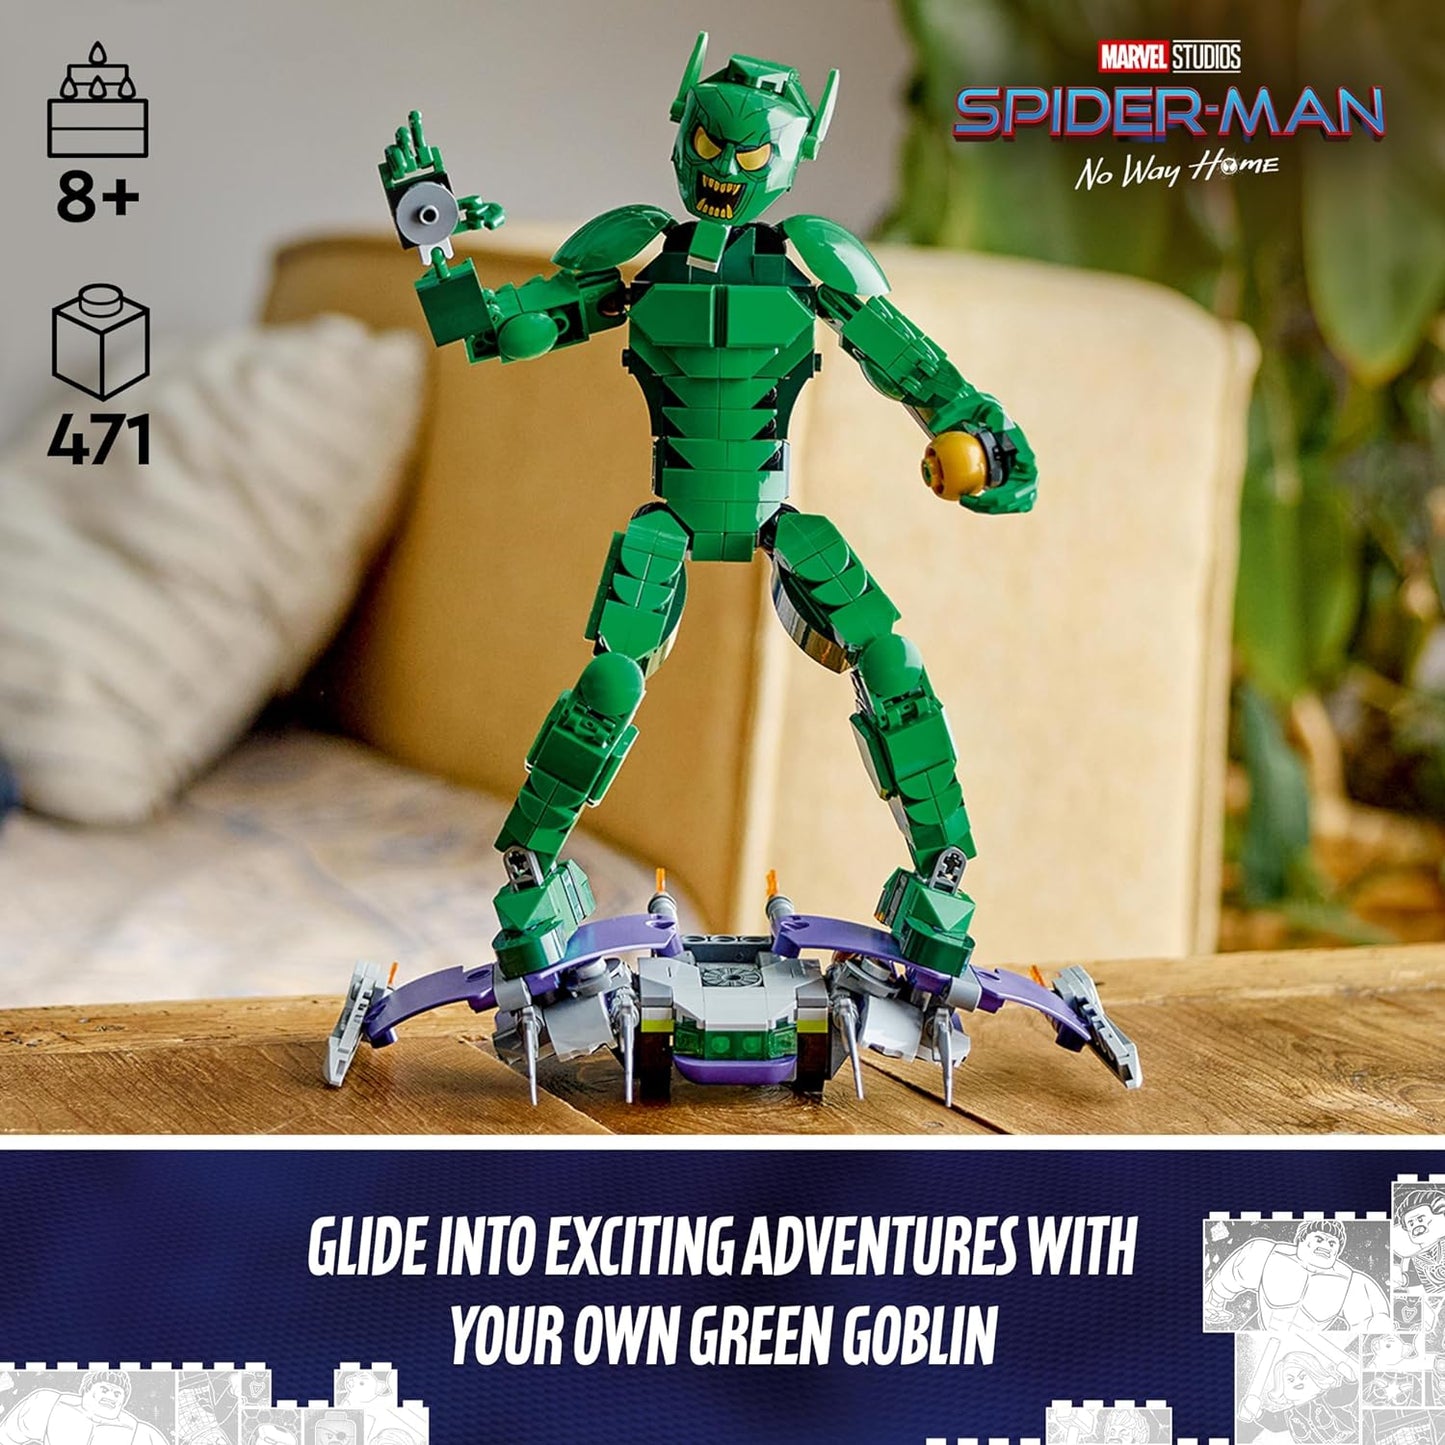 LEGO Figura de construção do Duende Verde da Marvel, brinquedo de construção de supervilão articulável para crianças, meninos e meninas de mais de 8 anos, com planador e bombas de abóbora, ideia de presente de super-herói 76284